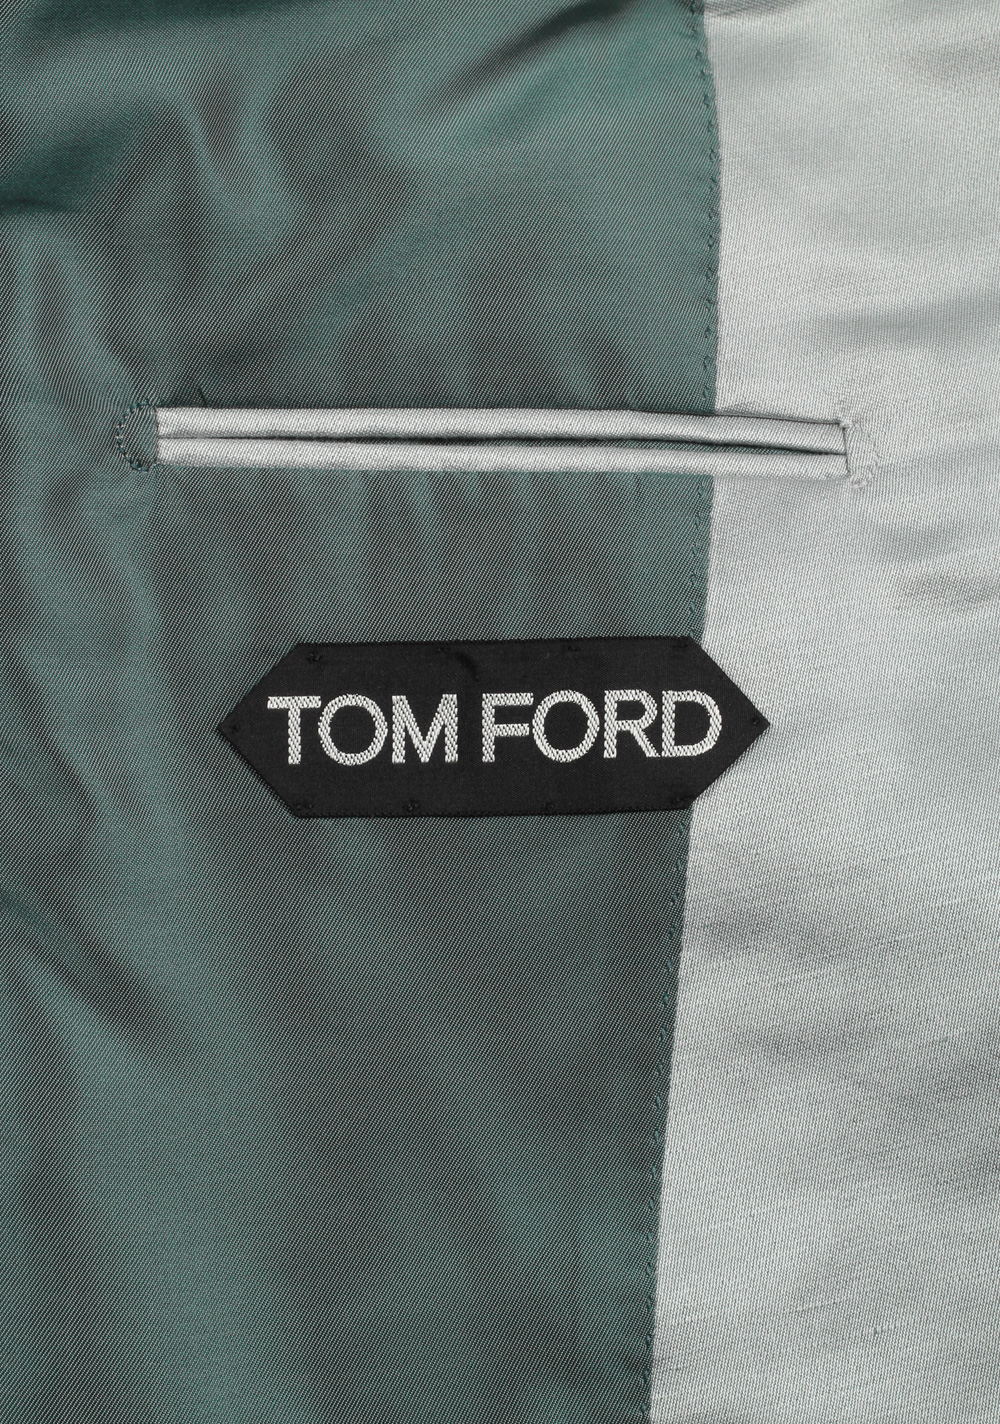 TOM FORD Atticus Blue Suit Size 46 / 36R U.S. | Costume Limité